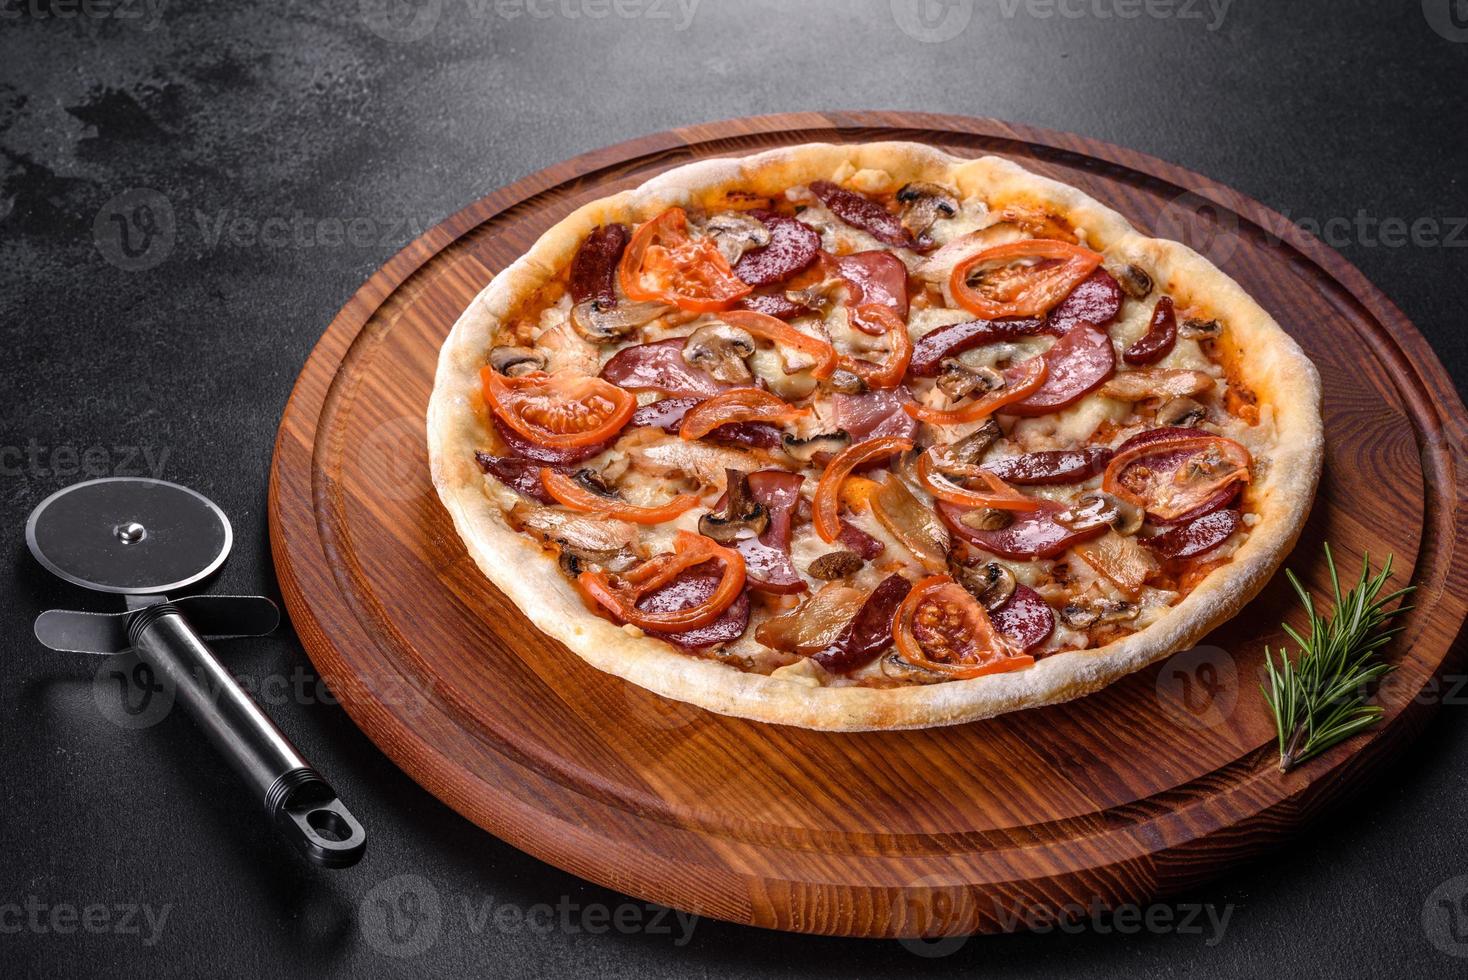 frische leckere Pizza im Herdofen mit Wurst, Paprika und Tomaten foto